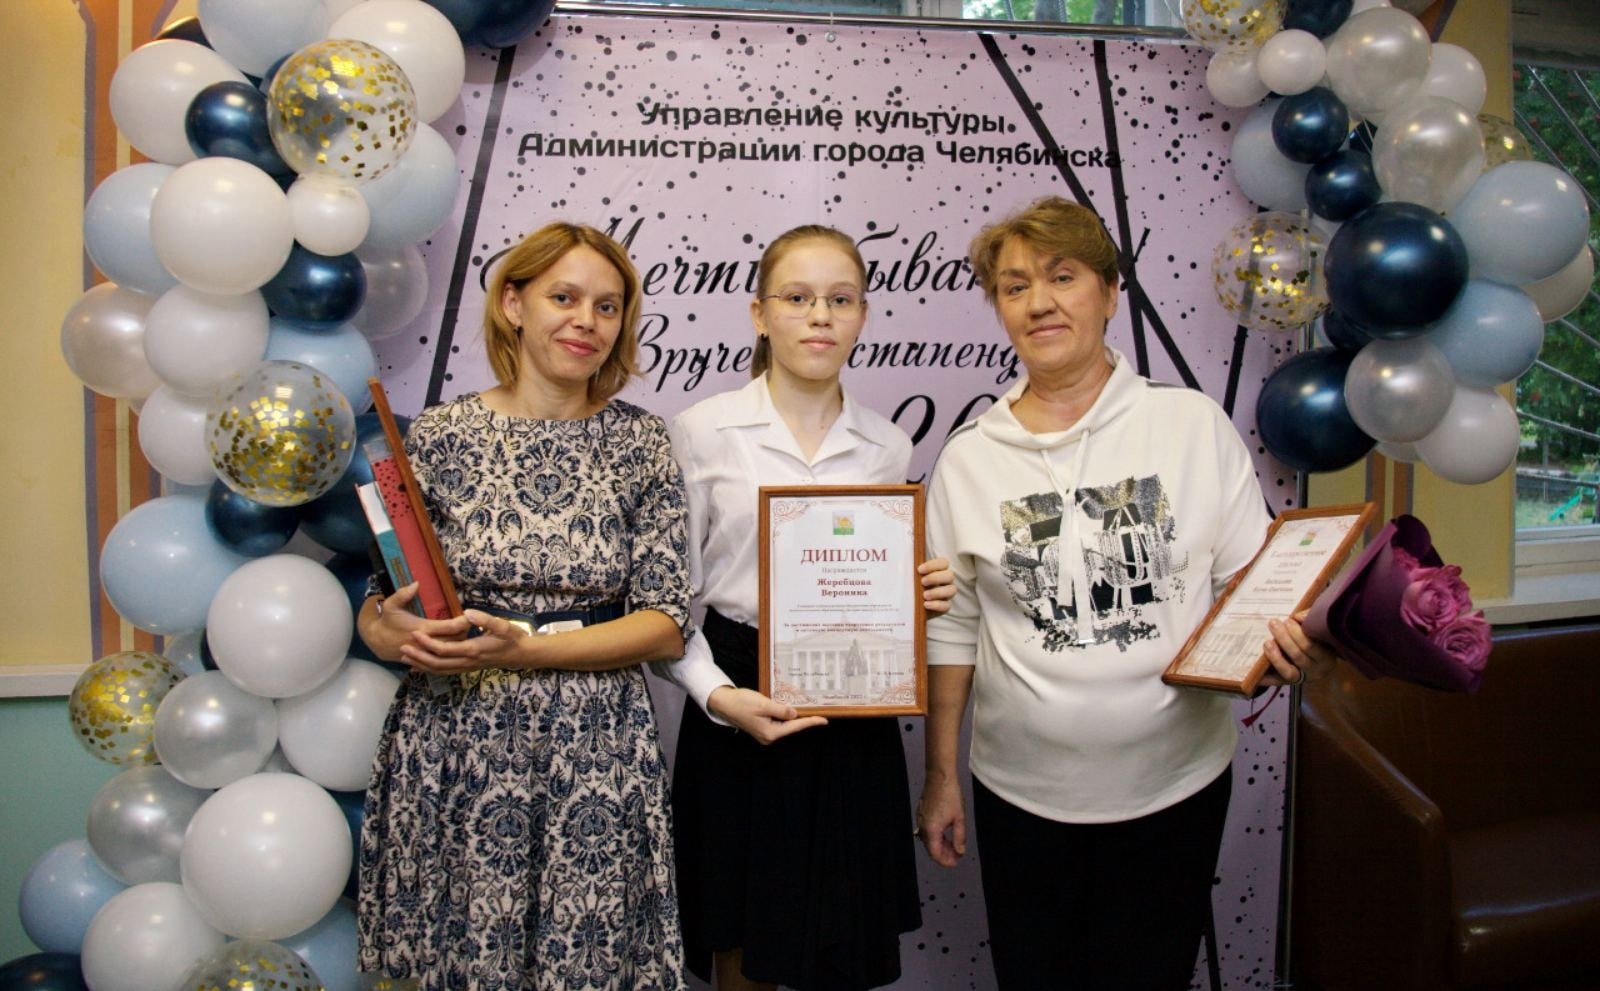 Стипендия Управления культуры Администрации города Челябинска